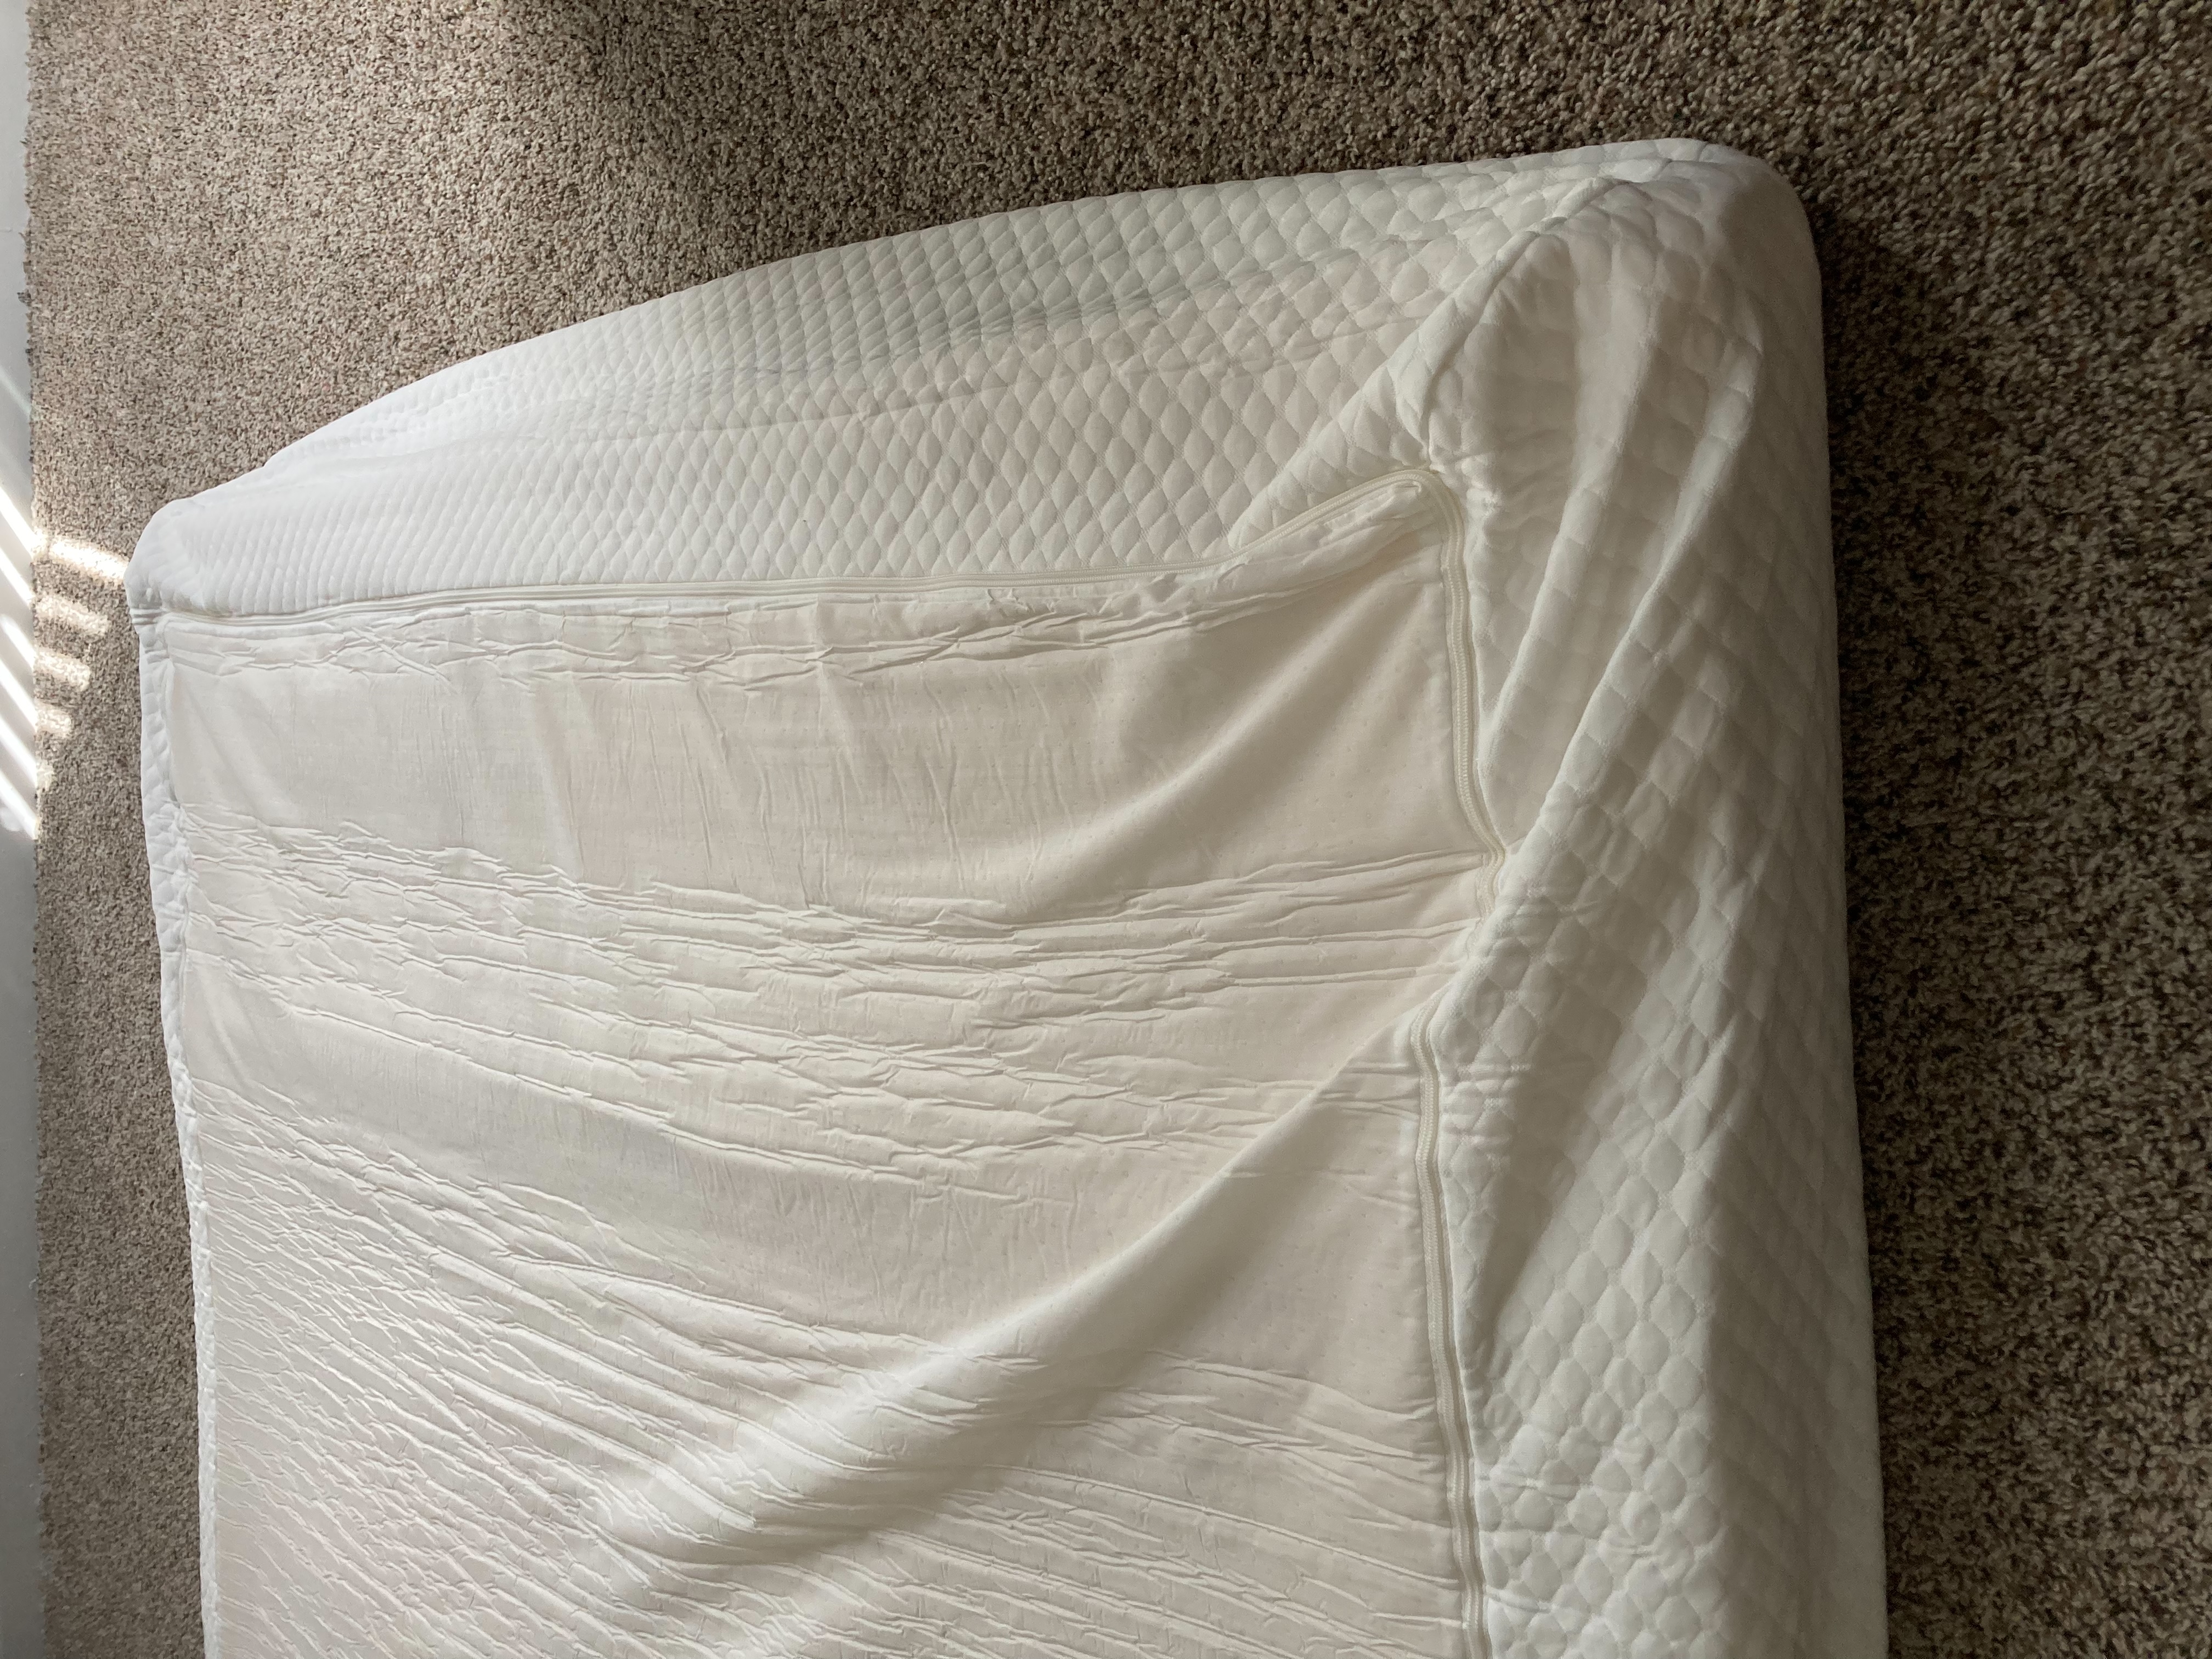 Ordered 10 inch mattress,  received 5 inch mattress